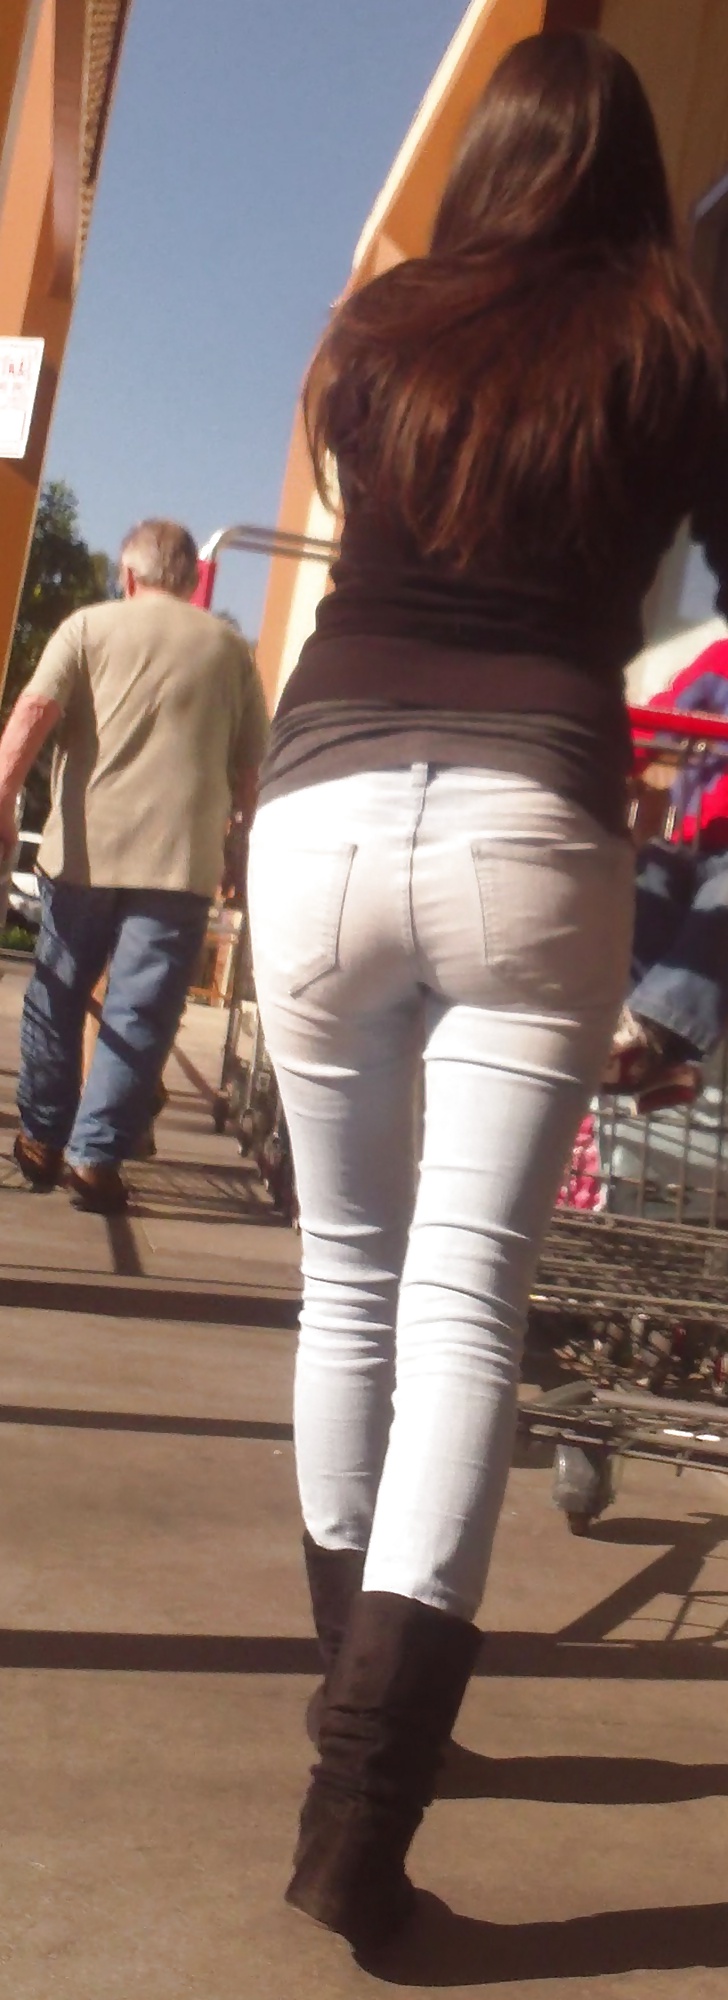 Popular teen girls ass & butt in jeans Part 6 #32009676